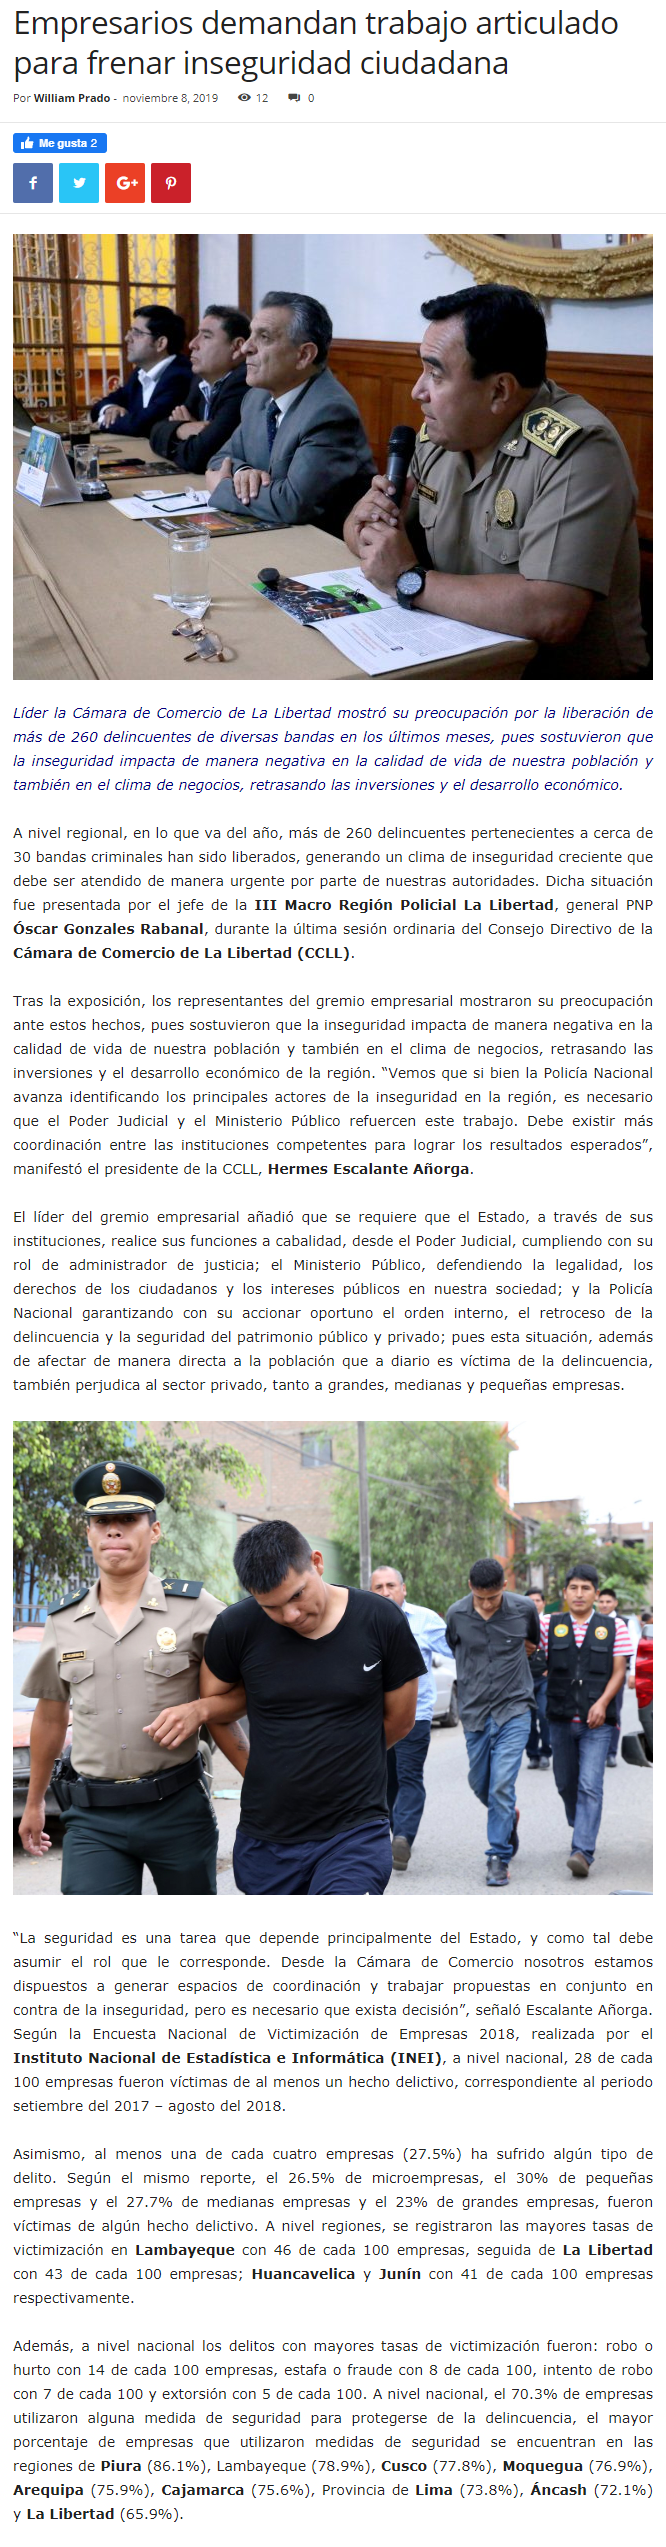 08.11.19.03 NOTICIAS RESPONSABLES CCLL preocupada por salida de delincuentes